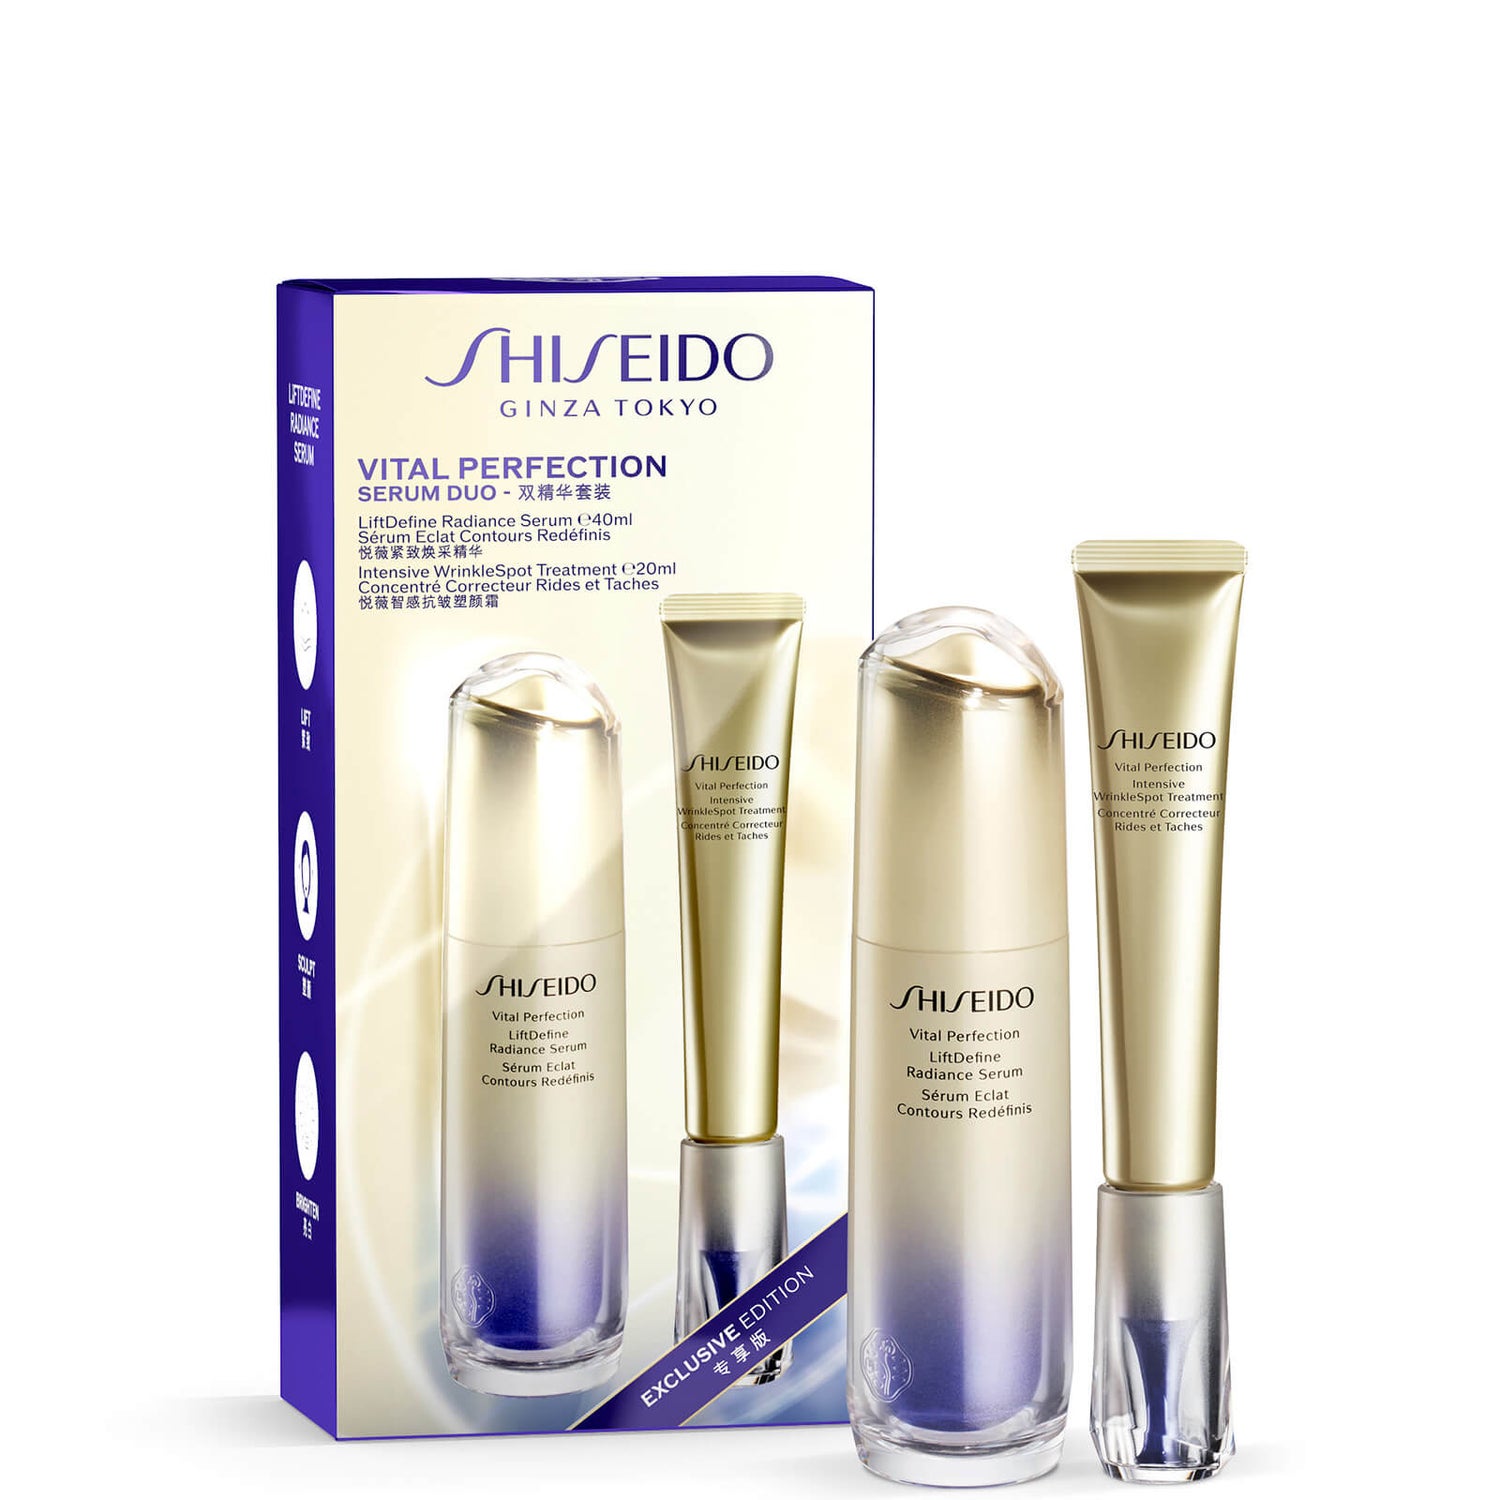 Exkluzivní sada bestsellerů Shiseido Vital Perfection